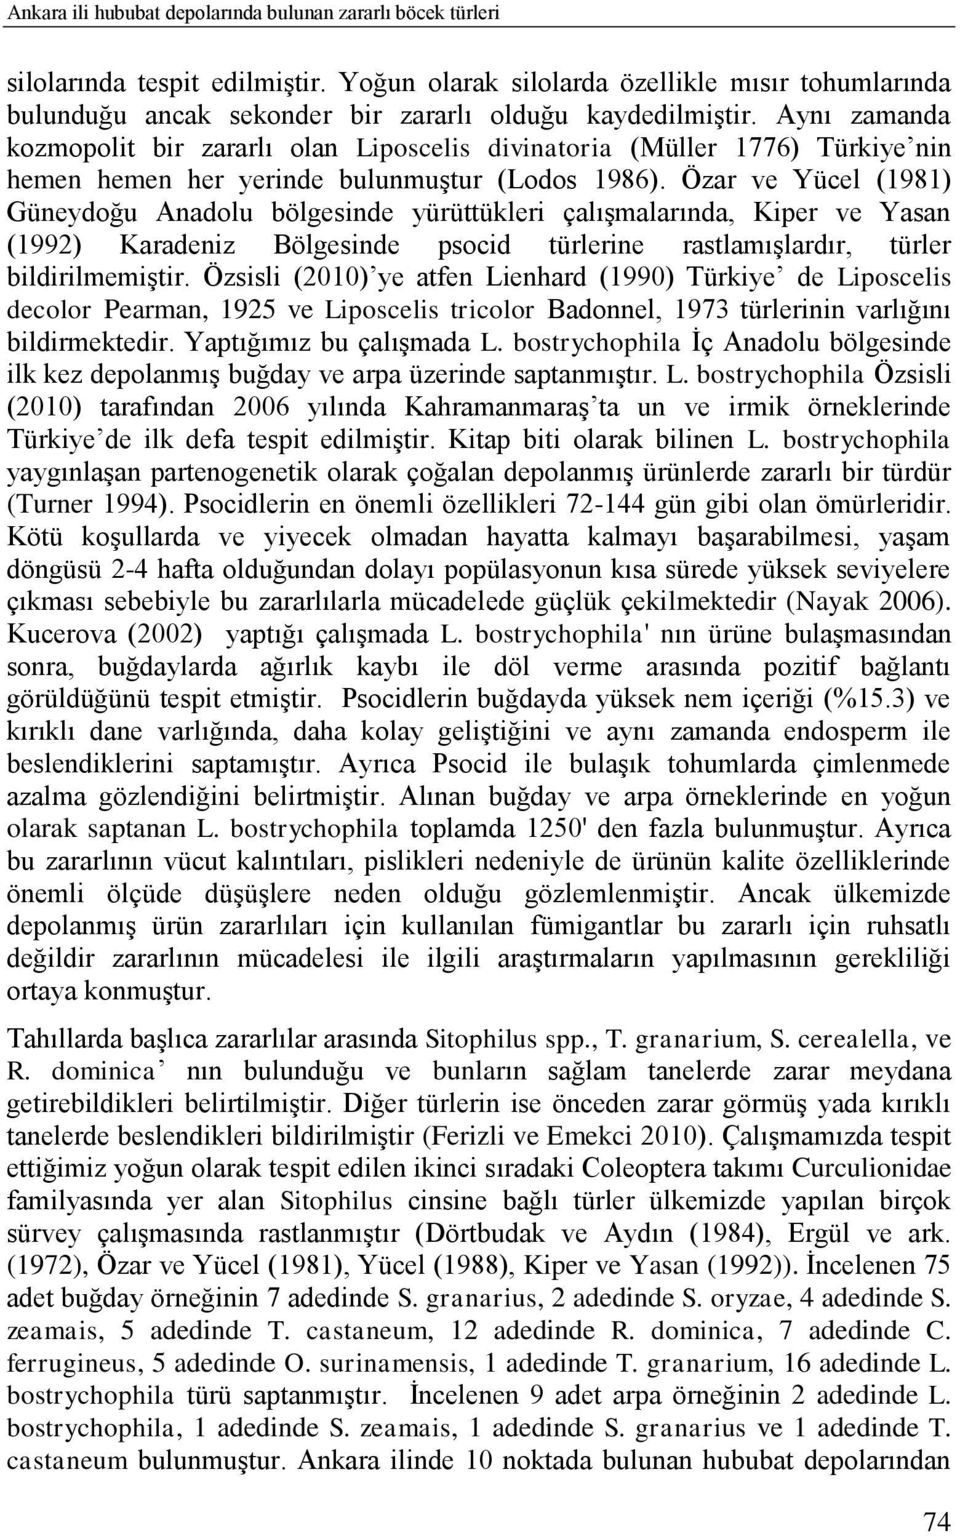 Aynı zamanda kozmopolit bir zararlı olan Liposcelis divinatoria (Müller 1776) Türkiye nin hemen hemen her yerinde bulunmuģtur (Lodos 1986).